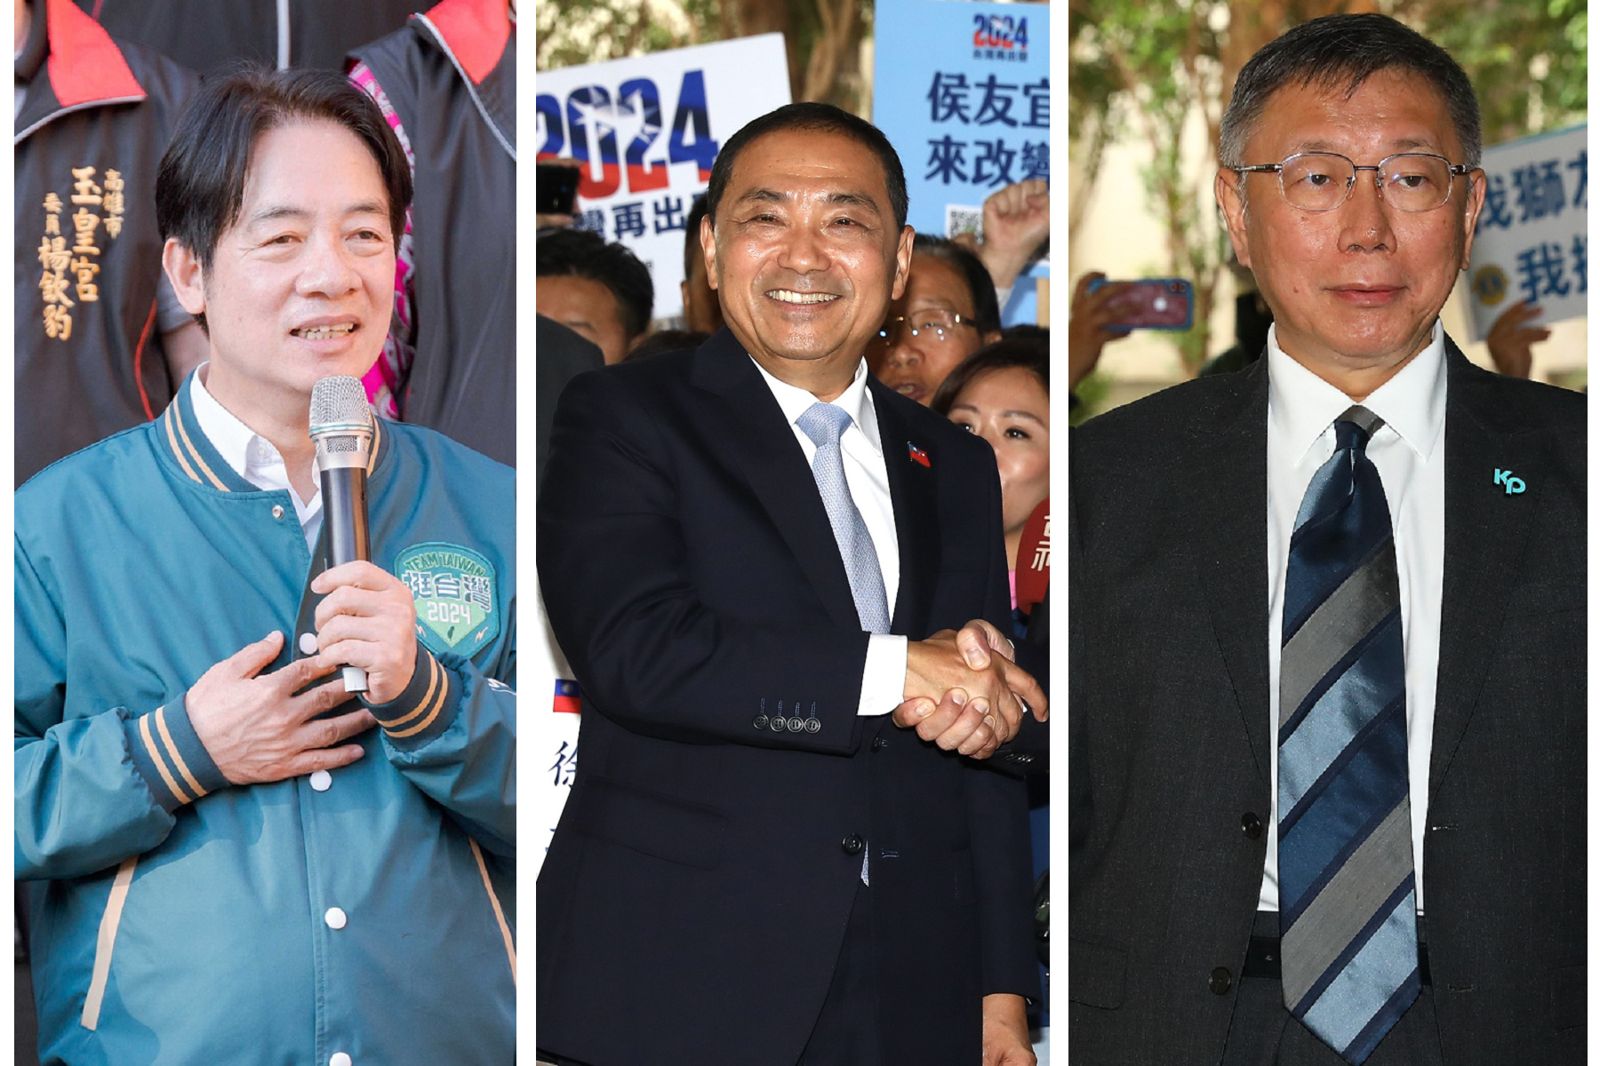 台灣「三腳督拚總統」讓外媒持續關注